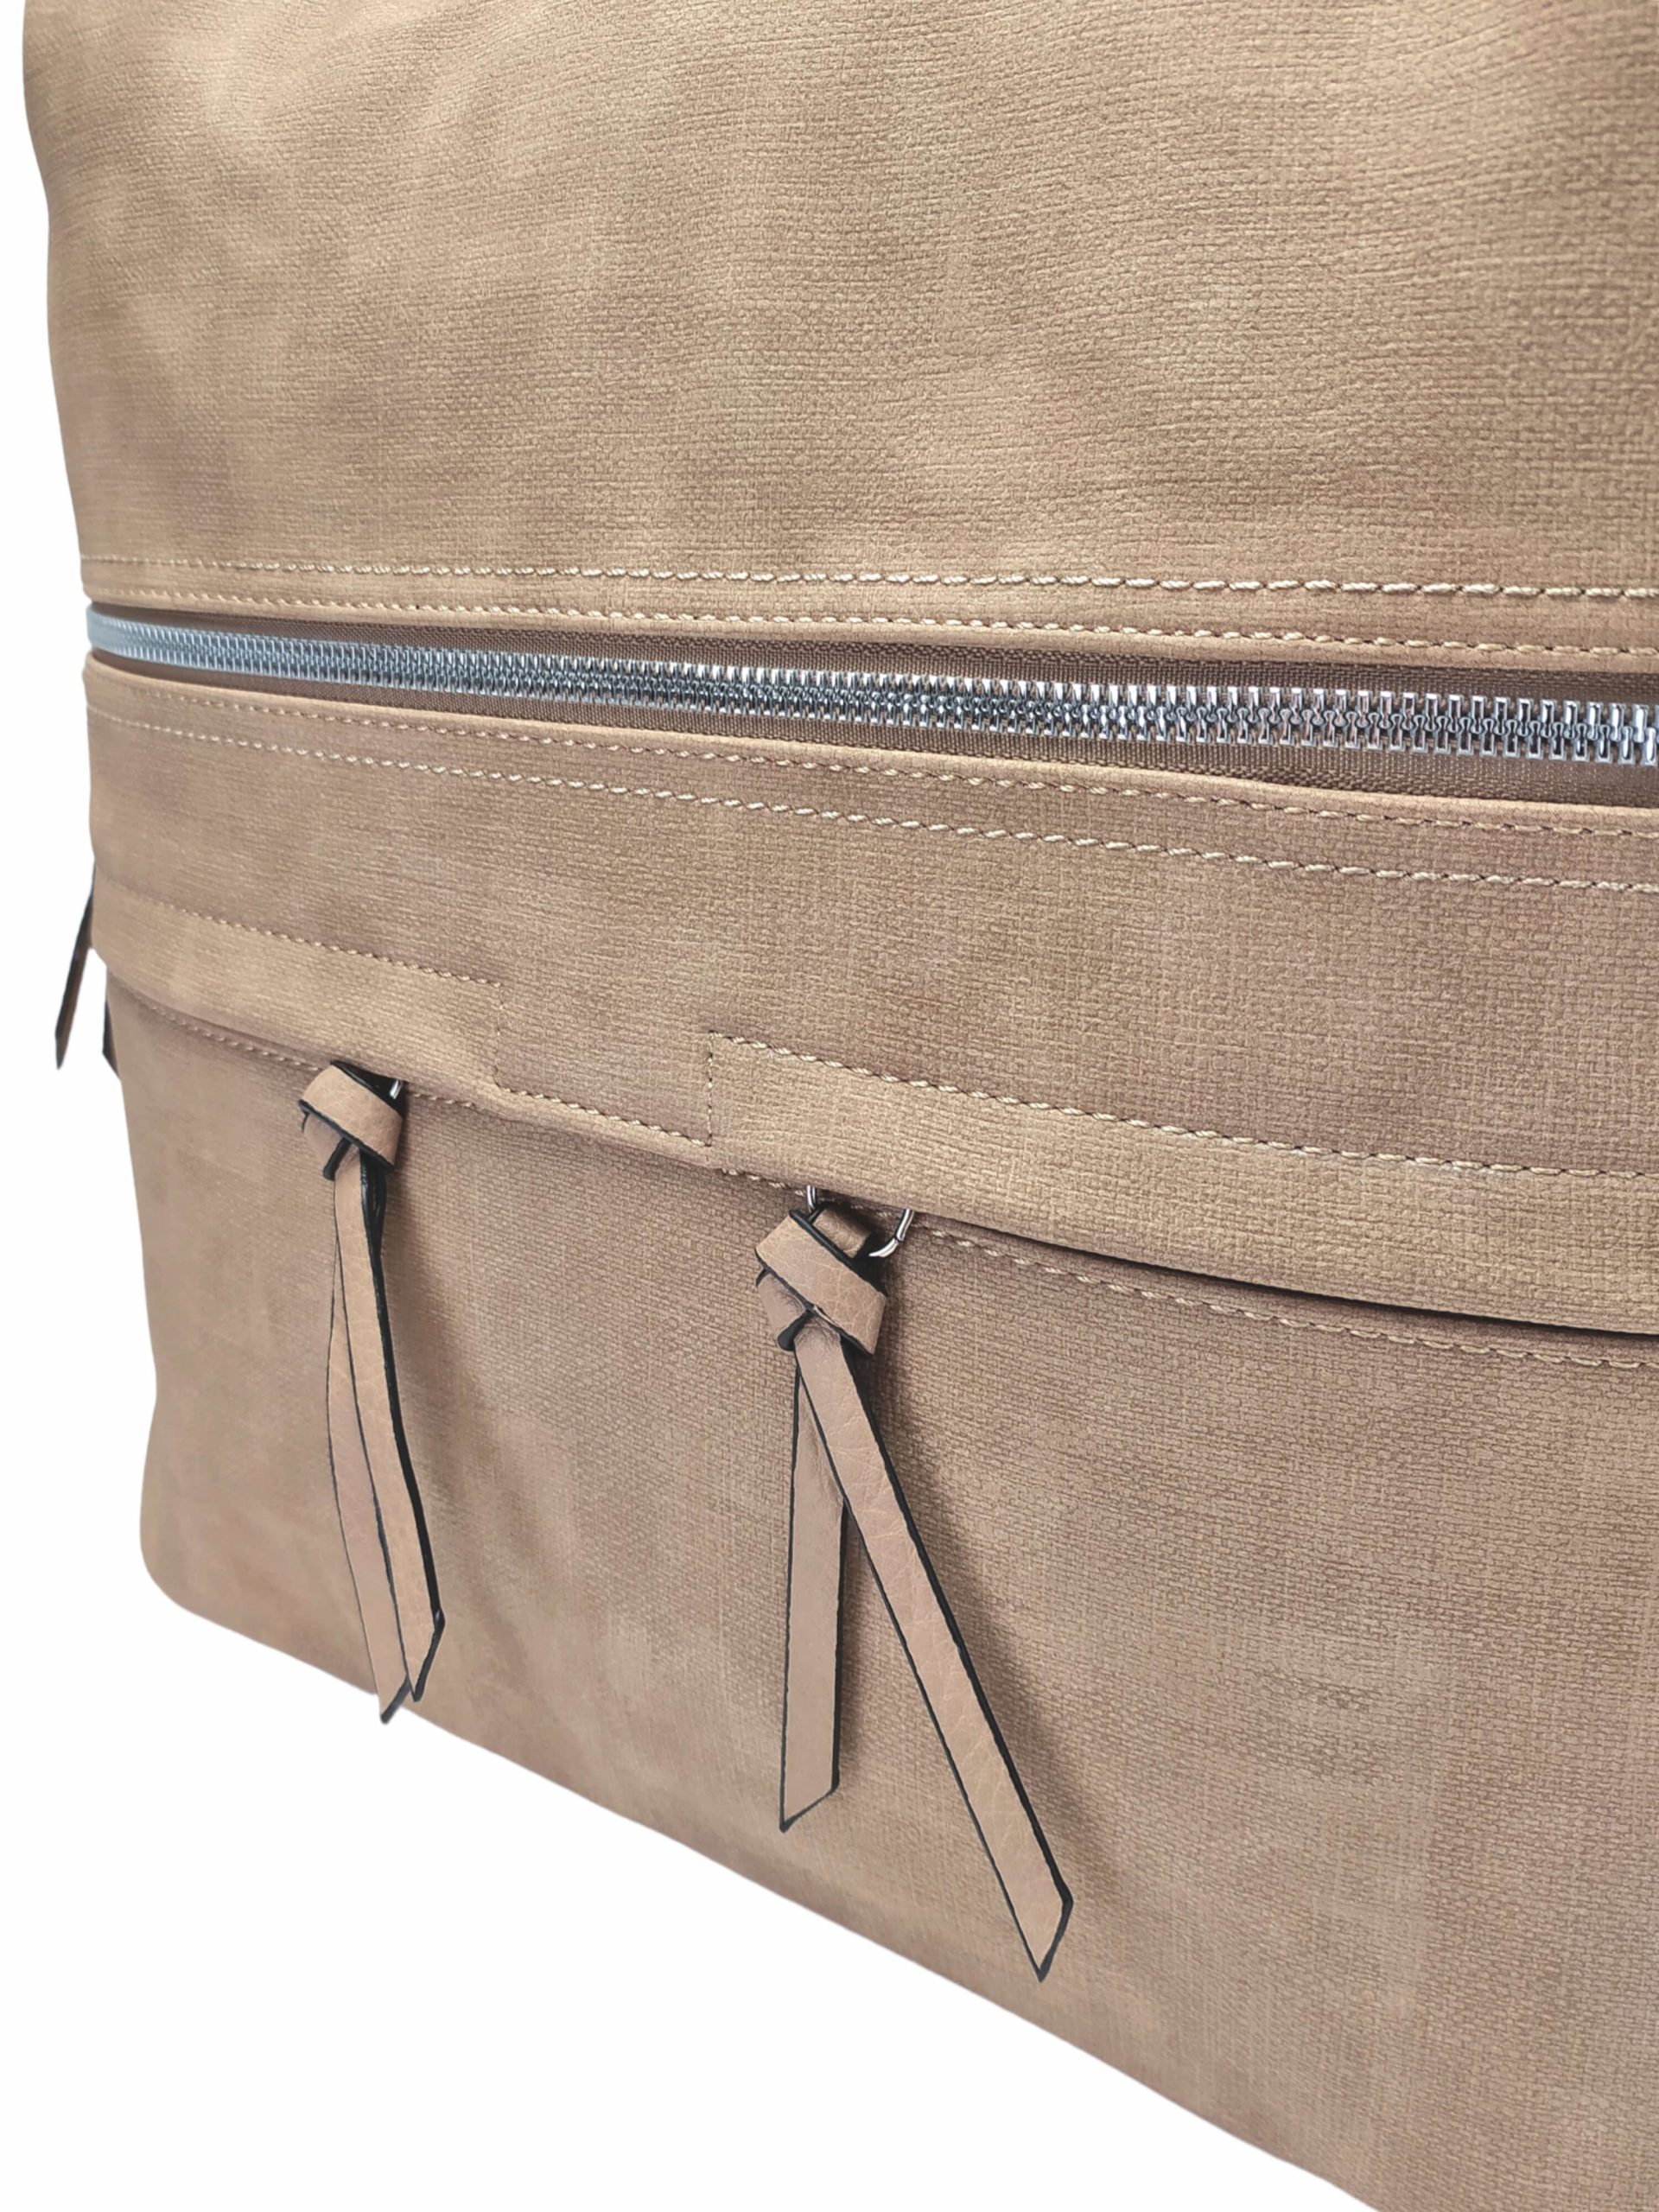 Velká světle hnědá kabelka a batoh 2v1 s kapsami, Tapple, H181175N, detail přední strany kabelky a batohu 2v1